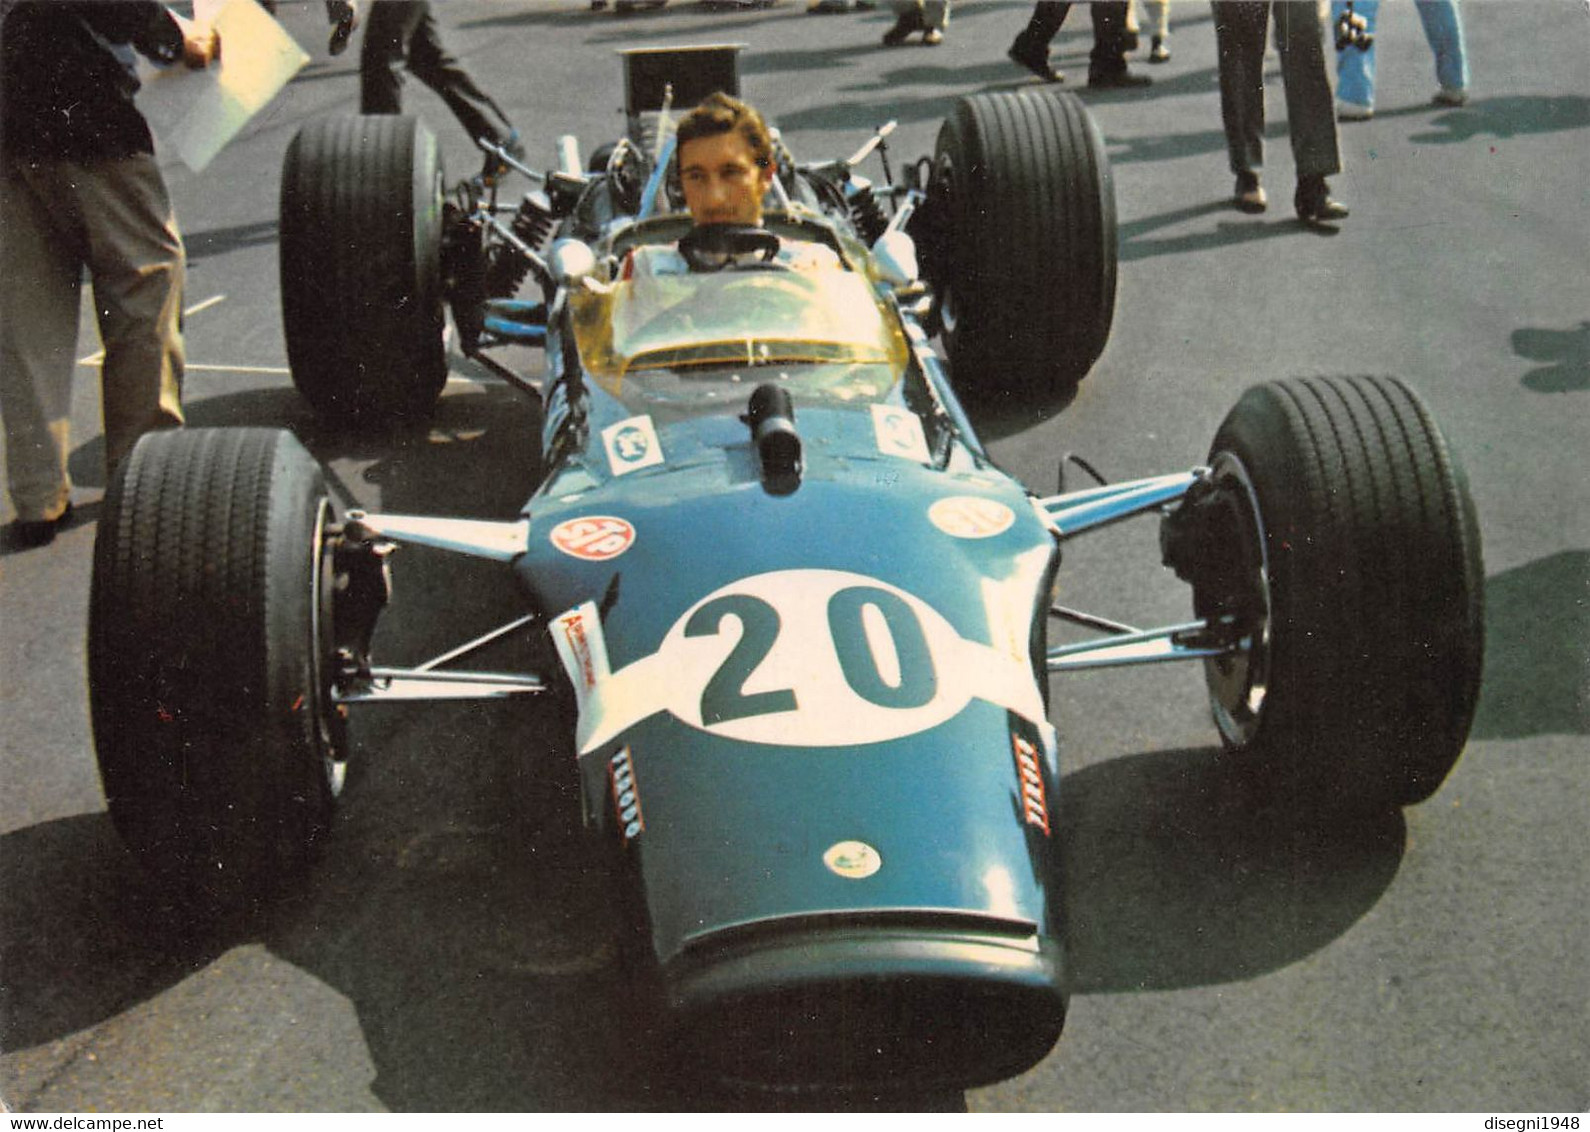 011007 " JOSEPH SIFFERT  - LOTUS FORD F. 1 1968 - GRAN PREMIO D'ITALIA 1968 - MONZA" CARTOLINA  ORIG. NON SPED. - Automobile - F1